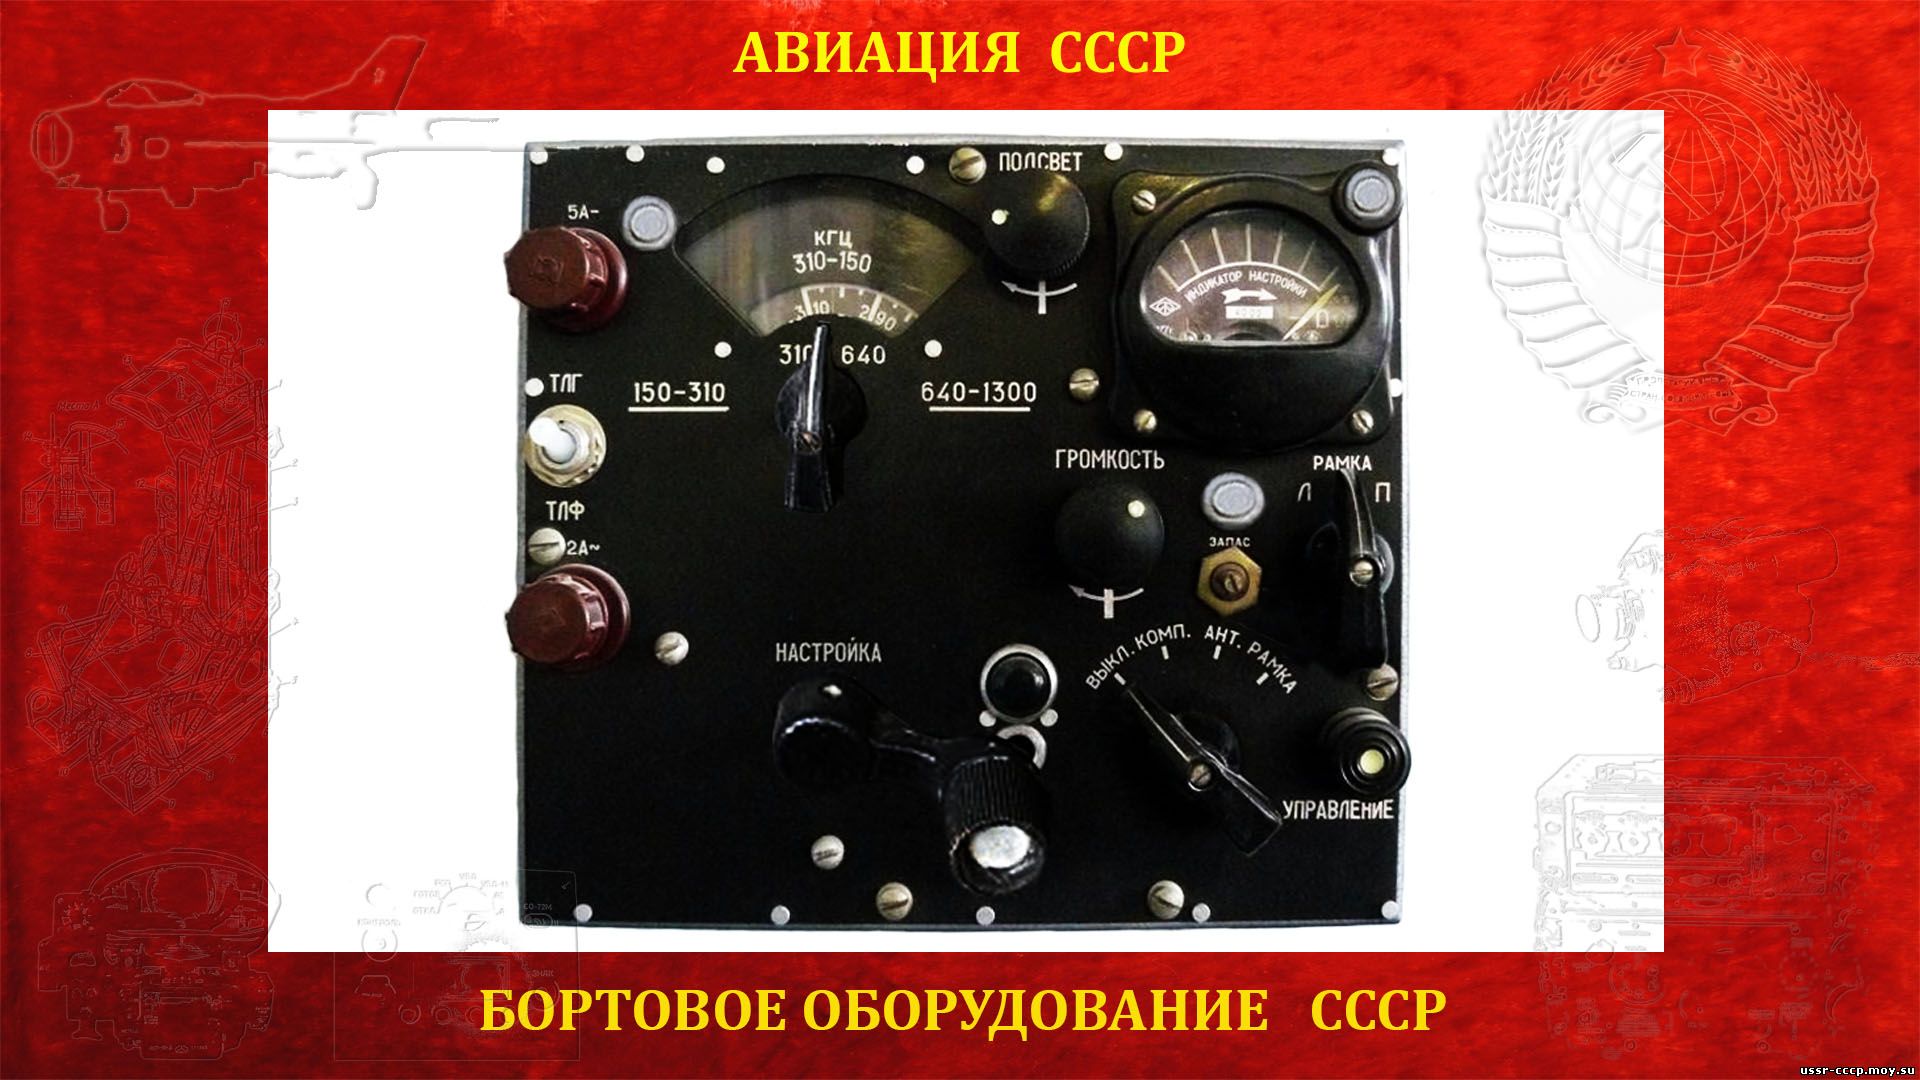 Автоматический радиокомпас (АРК-5) (повествование)